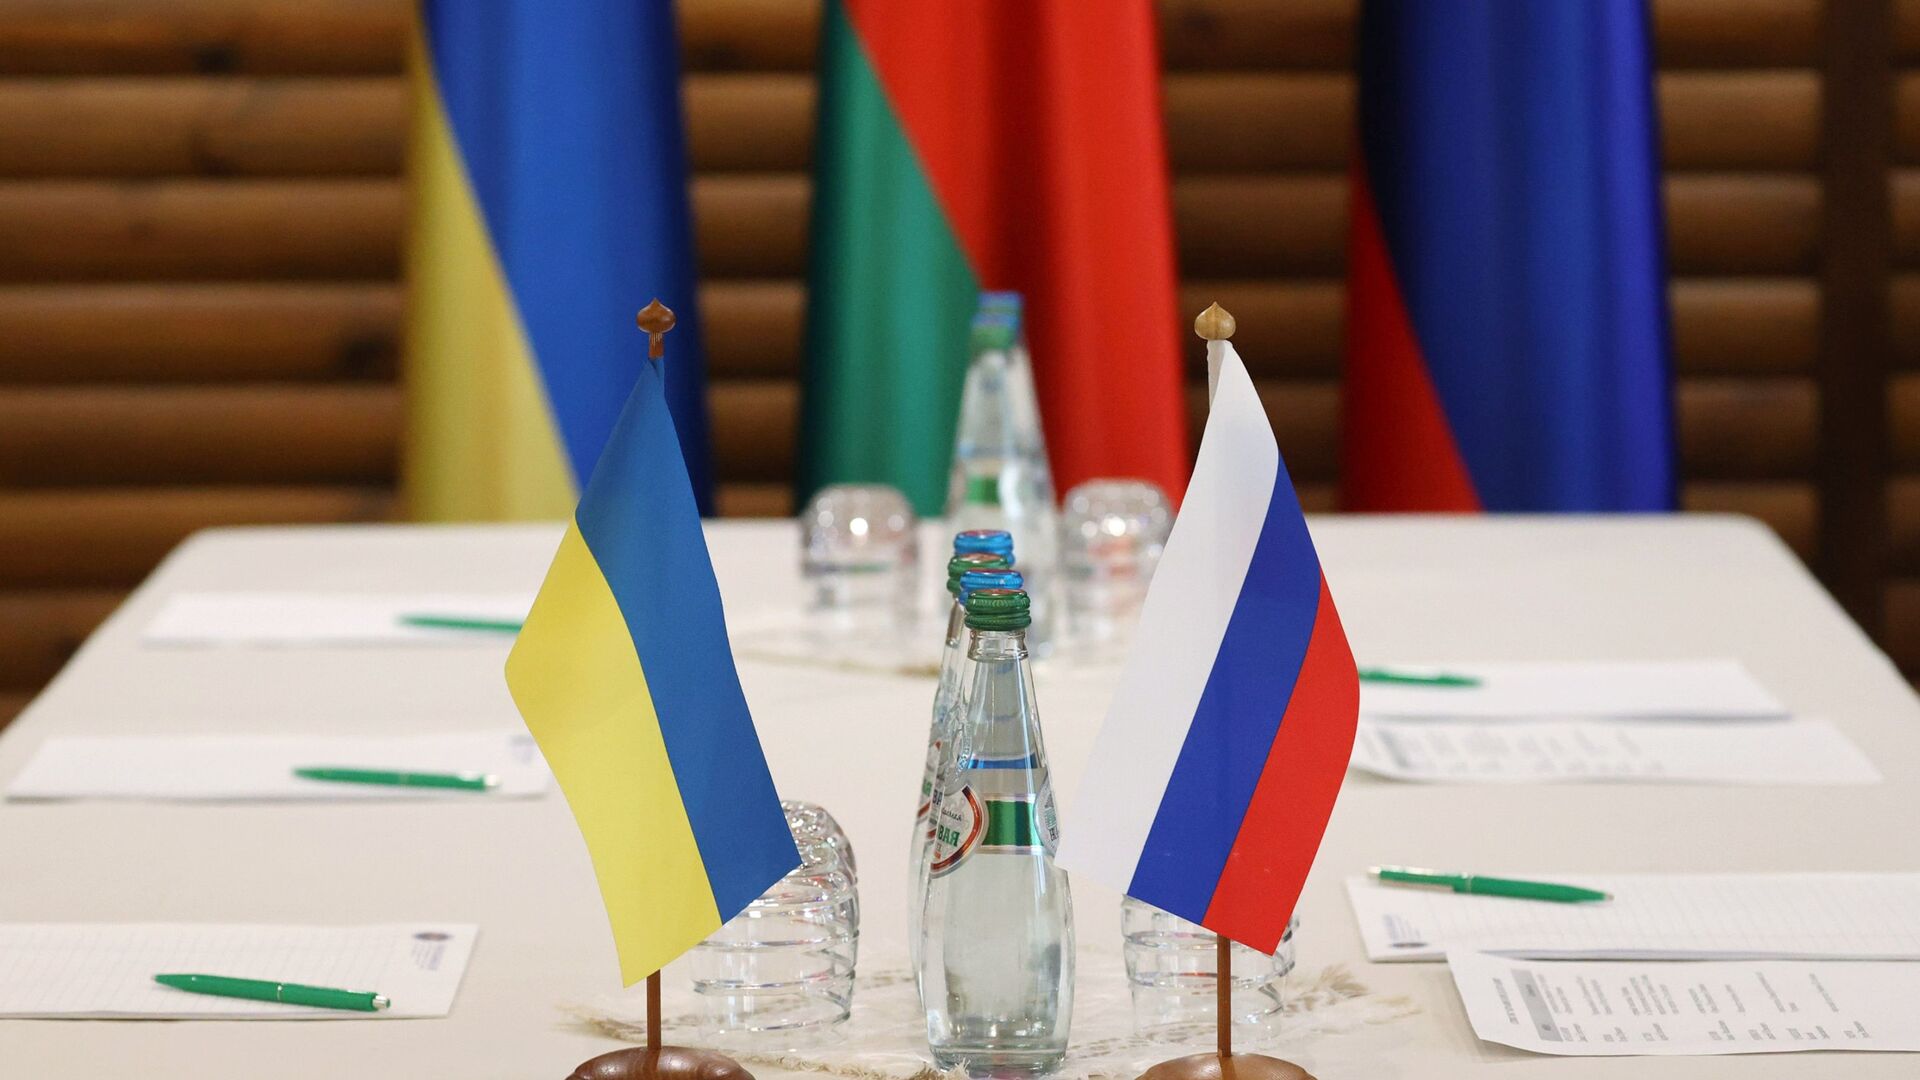 Флажки на столе, за которым пройдут российско-украинские переговоры - Sputnik Таджикистан, 1920, 07.03.2022